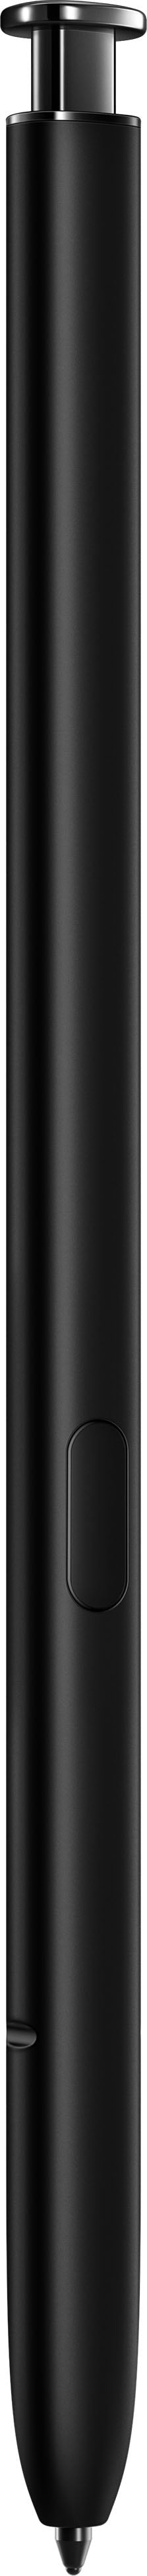 Samsung - Galaxy S22 Ultra 128GB - Phantom Black (Verizon)_15